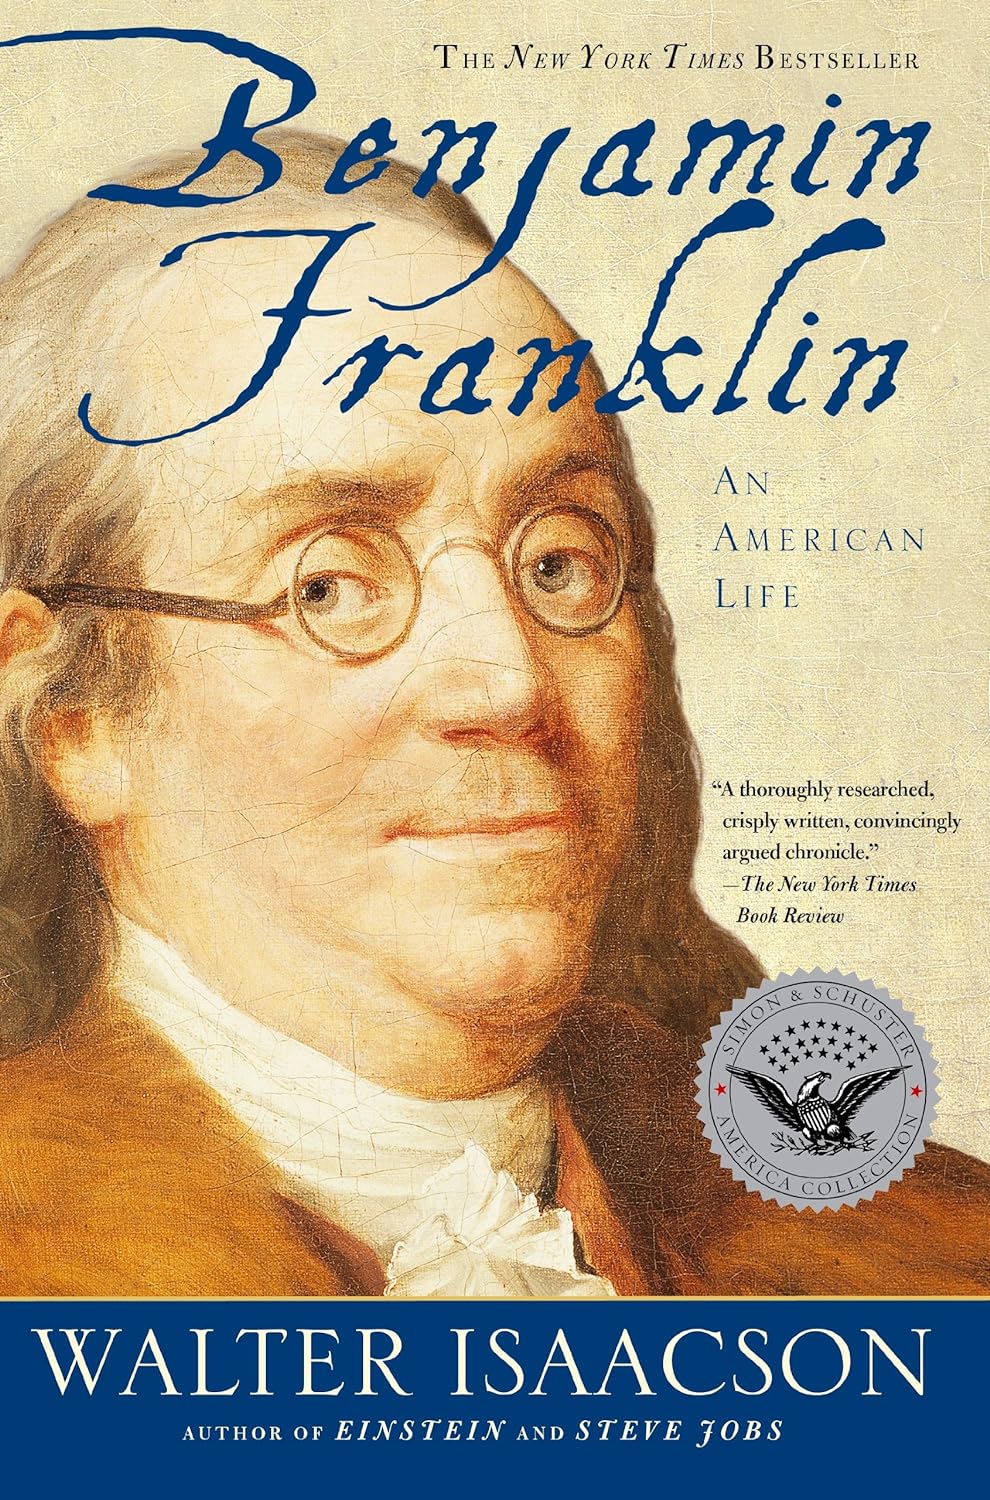 Book cover: "Ben Franklin."